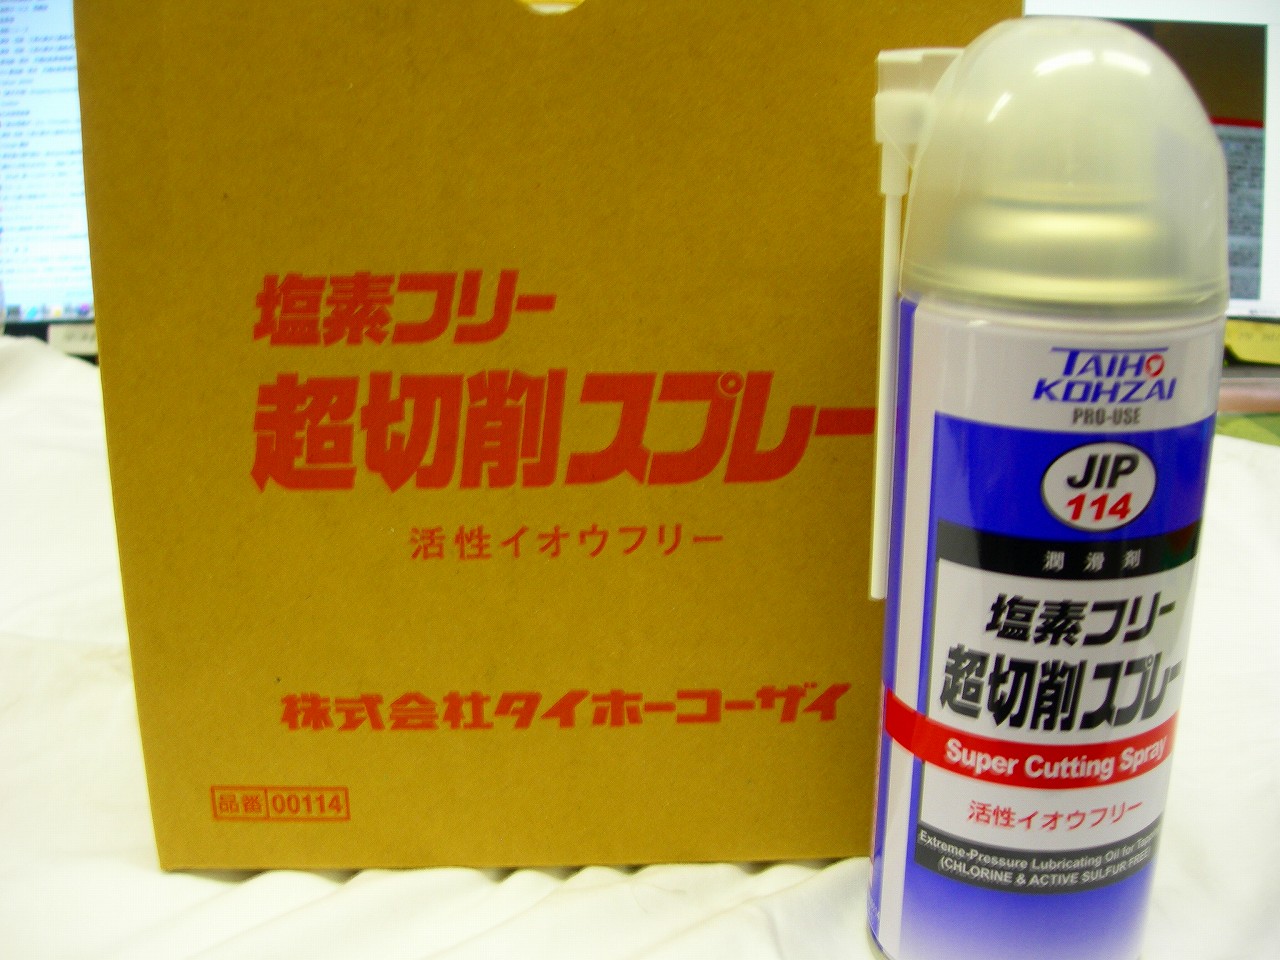 タイホーコーザイ TAIHO KOHZAI JIP114 超切削スプレー 塩素&活性イオウ フリータイプ 420ml ばら売り不可　6本1箱　1箱ゆうパック80サイズ　在庫僅か